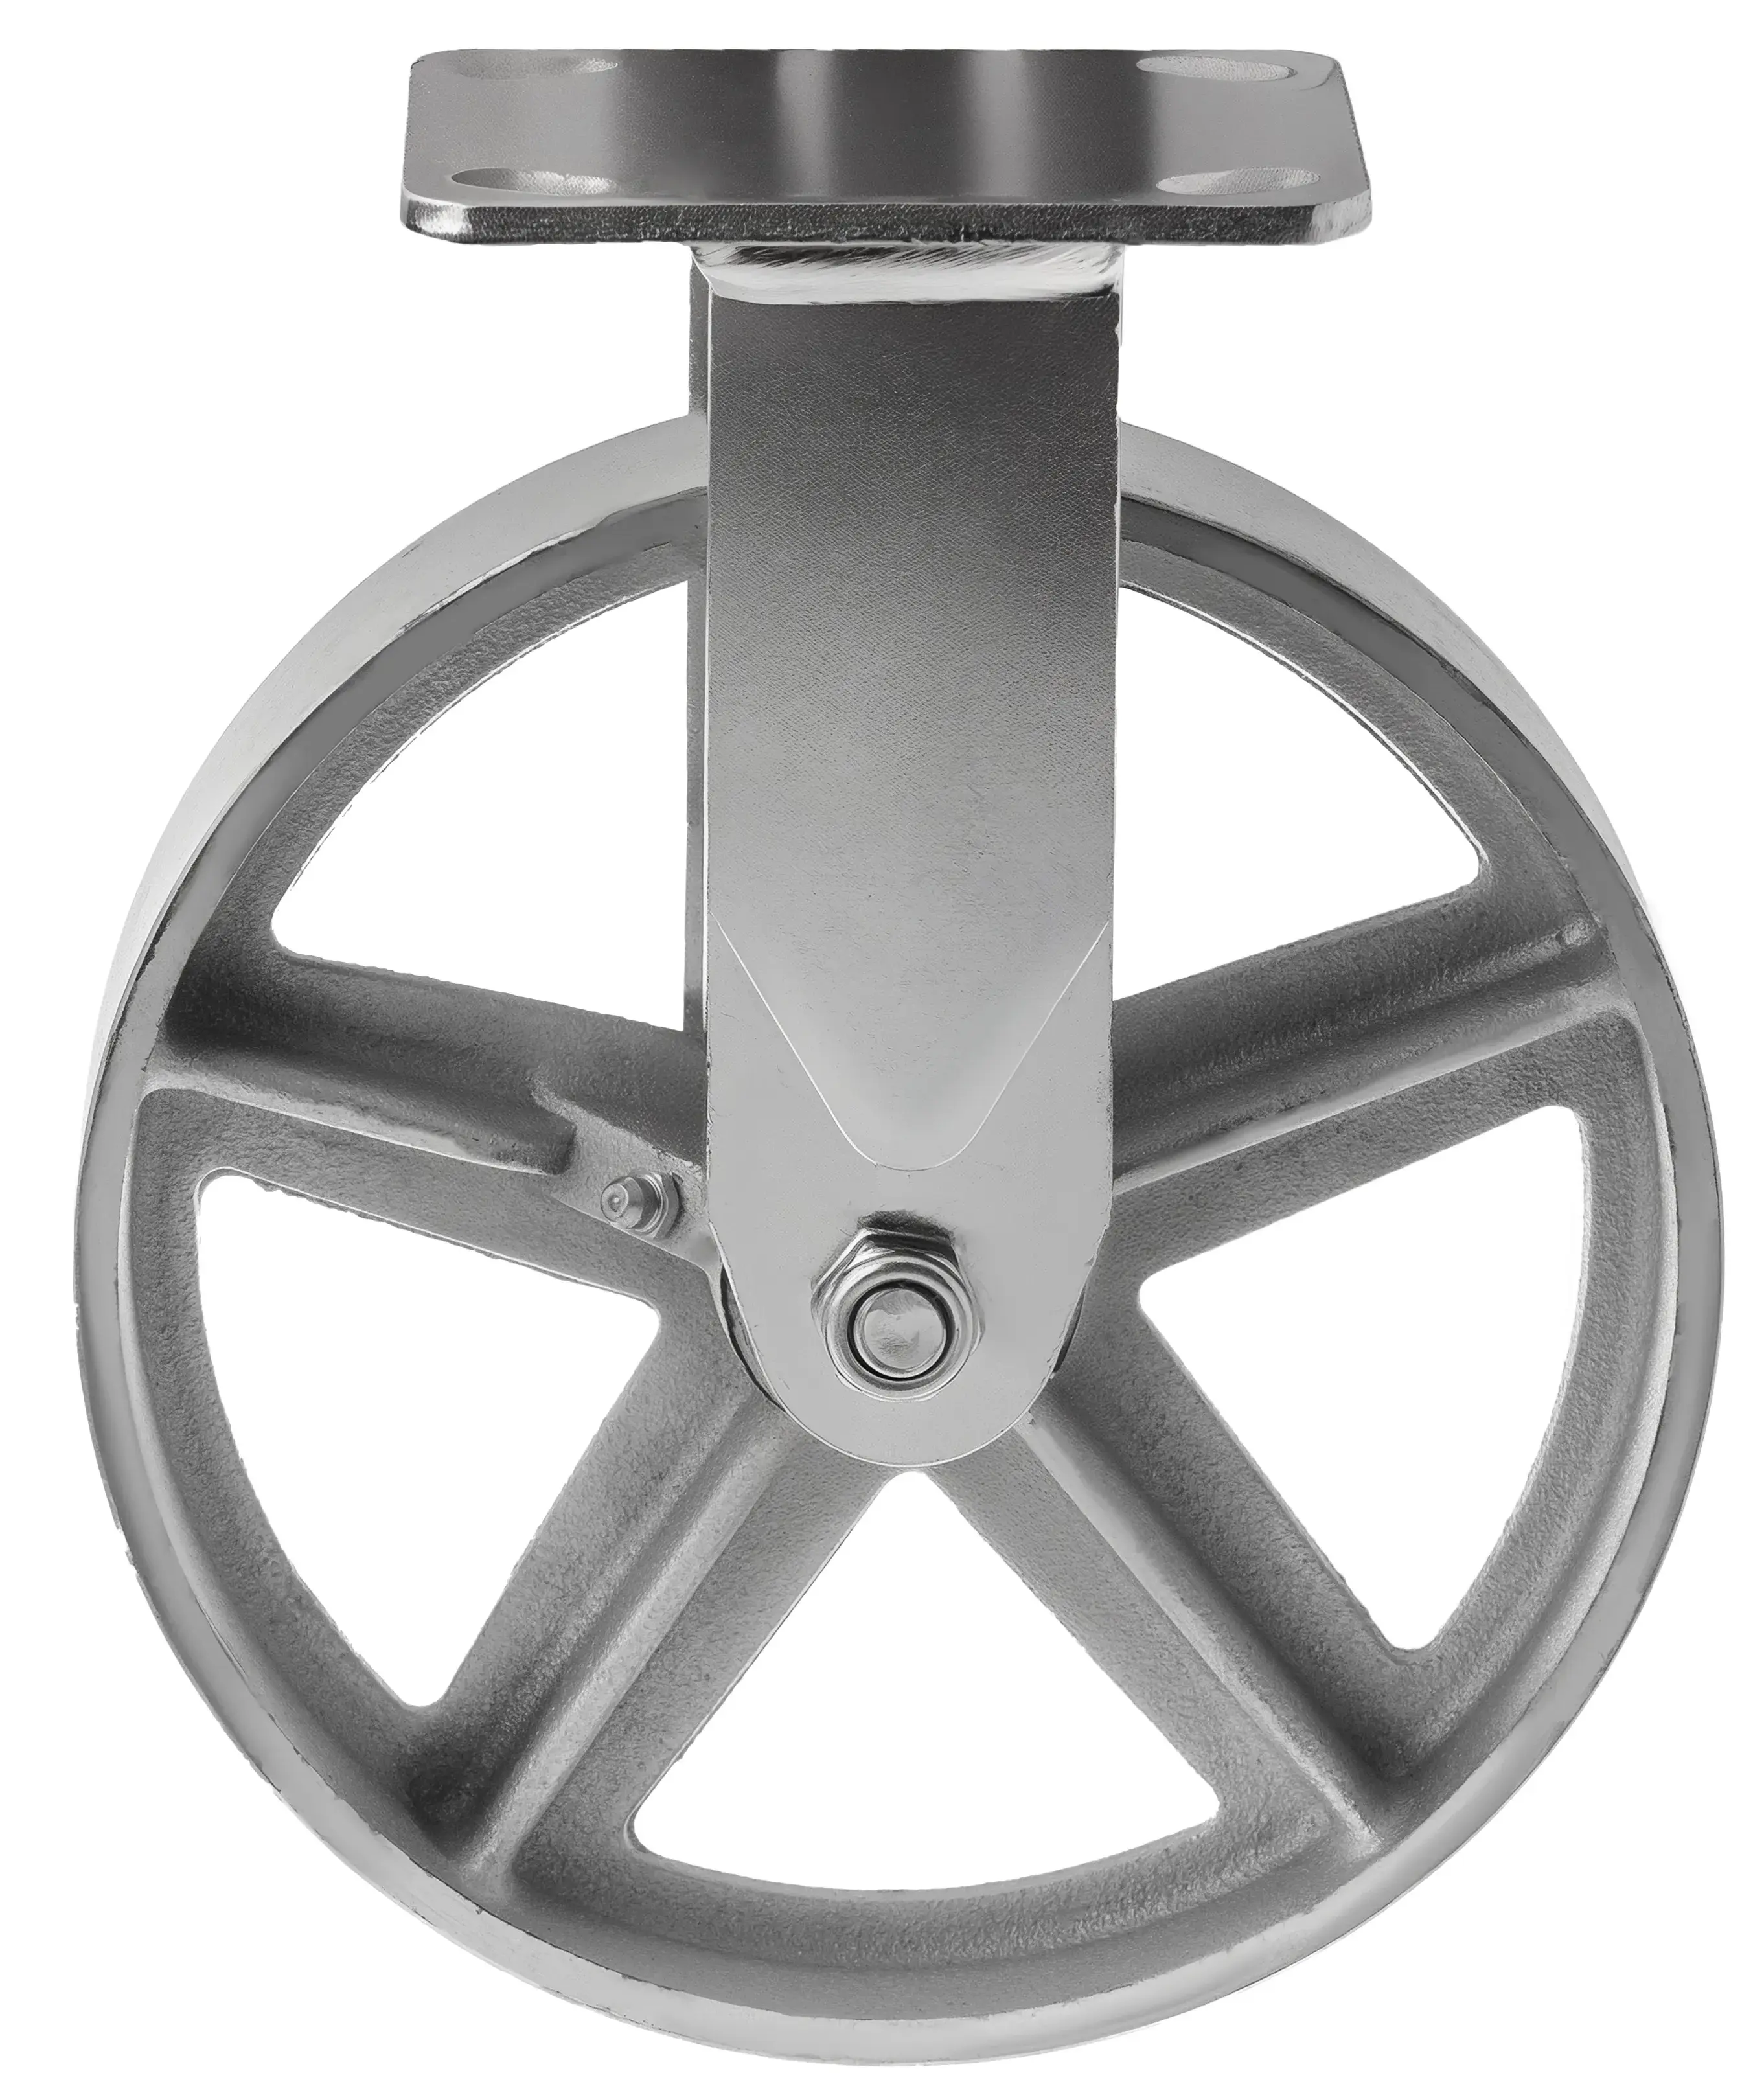 Большегрузное чугунное колесо без резины 200 мм (неповоротное, площадка, темный обод) - FCs 80